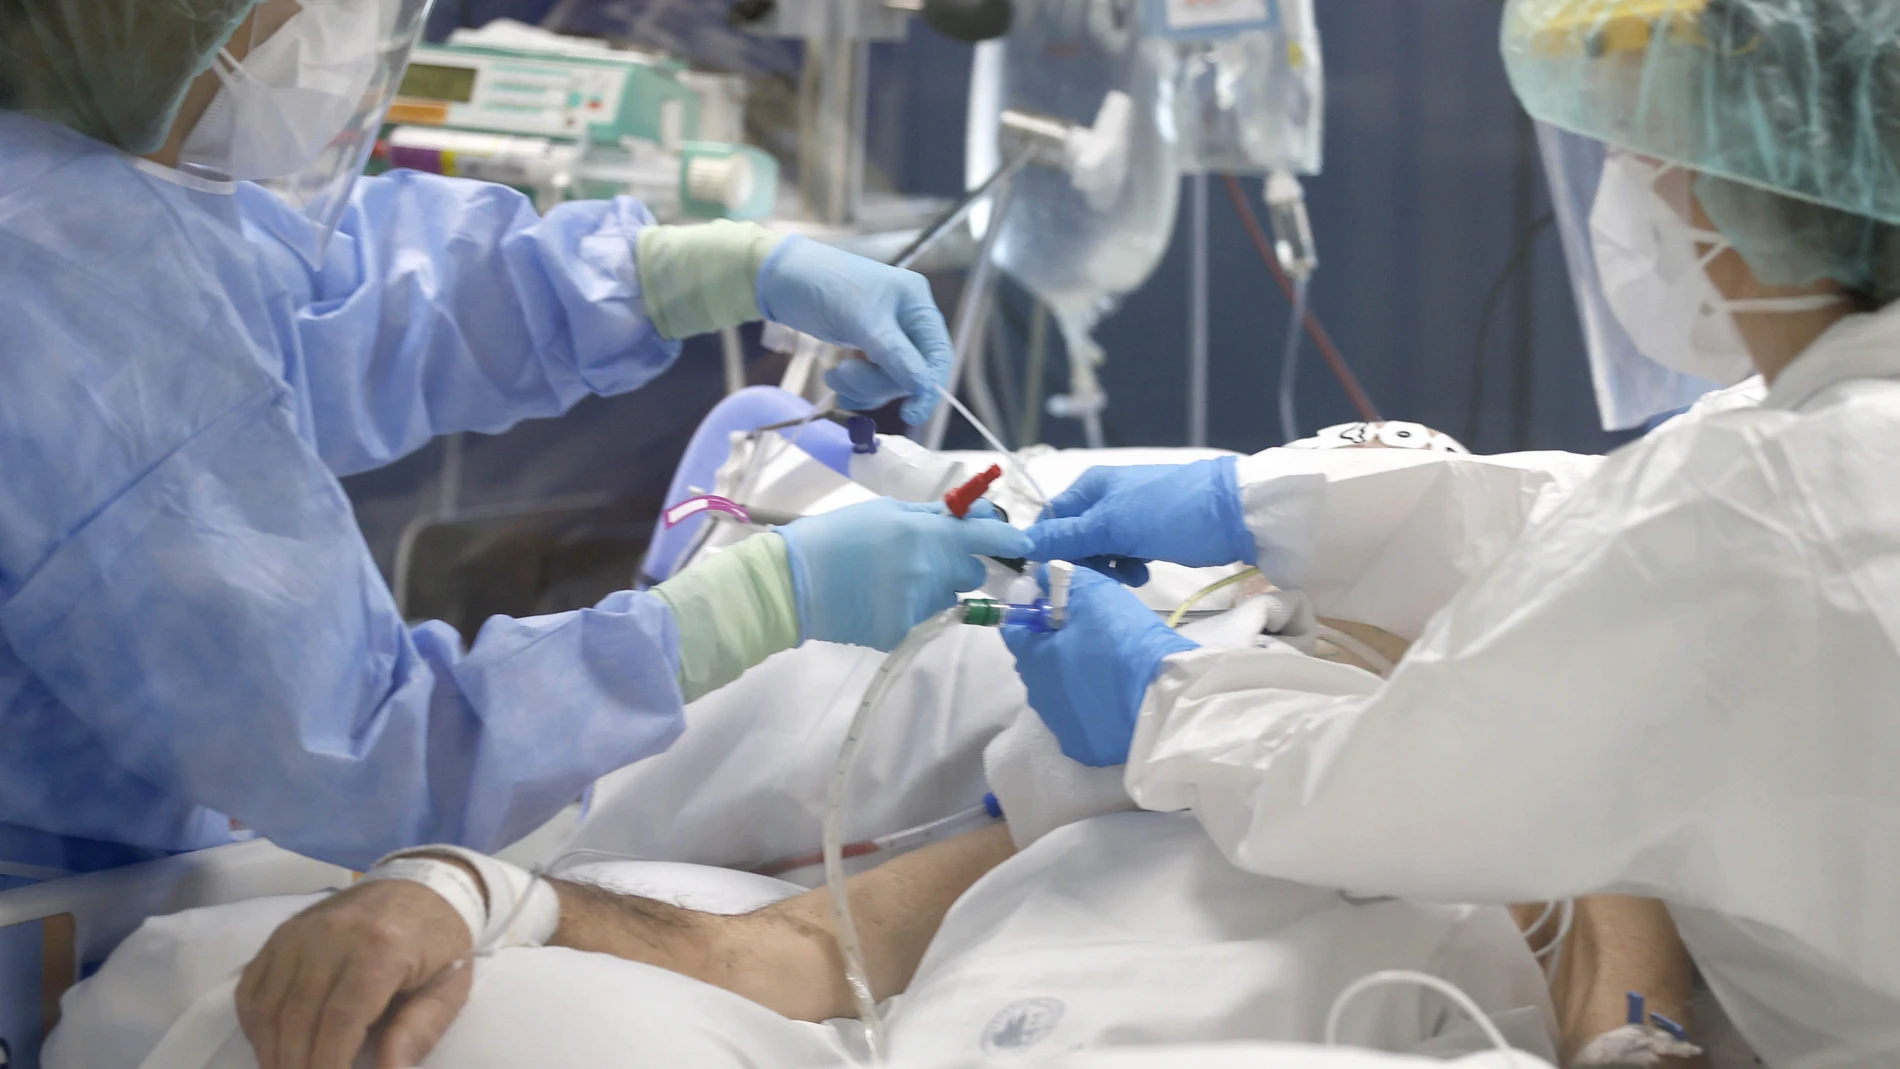 Enfermeras del hospital bilbaíno de Basurto, tratan a un paciente infectado por covid 19